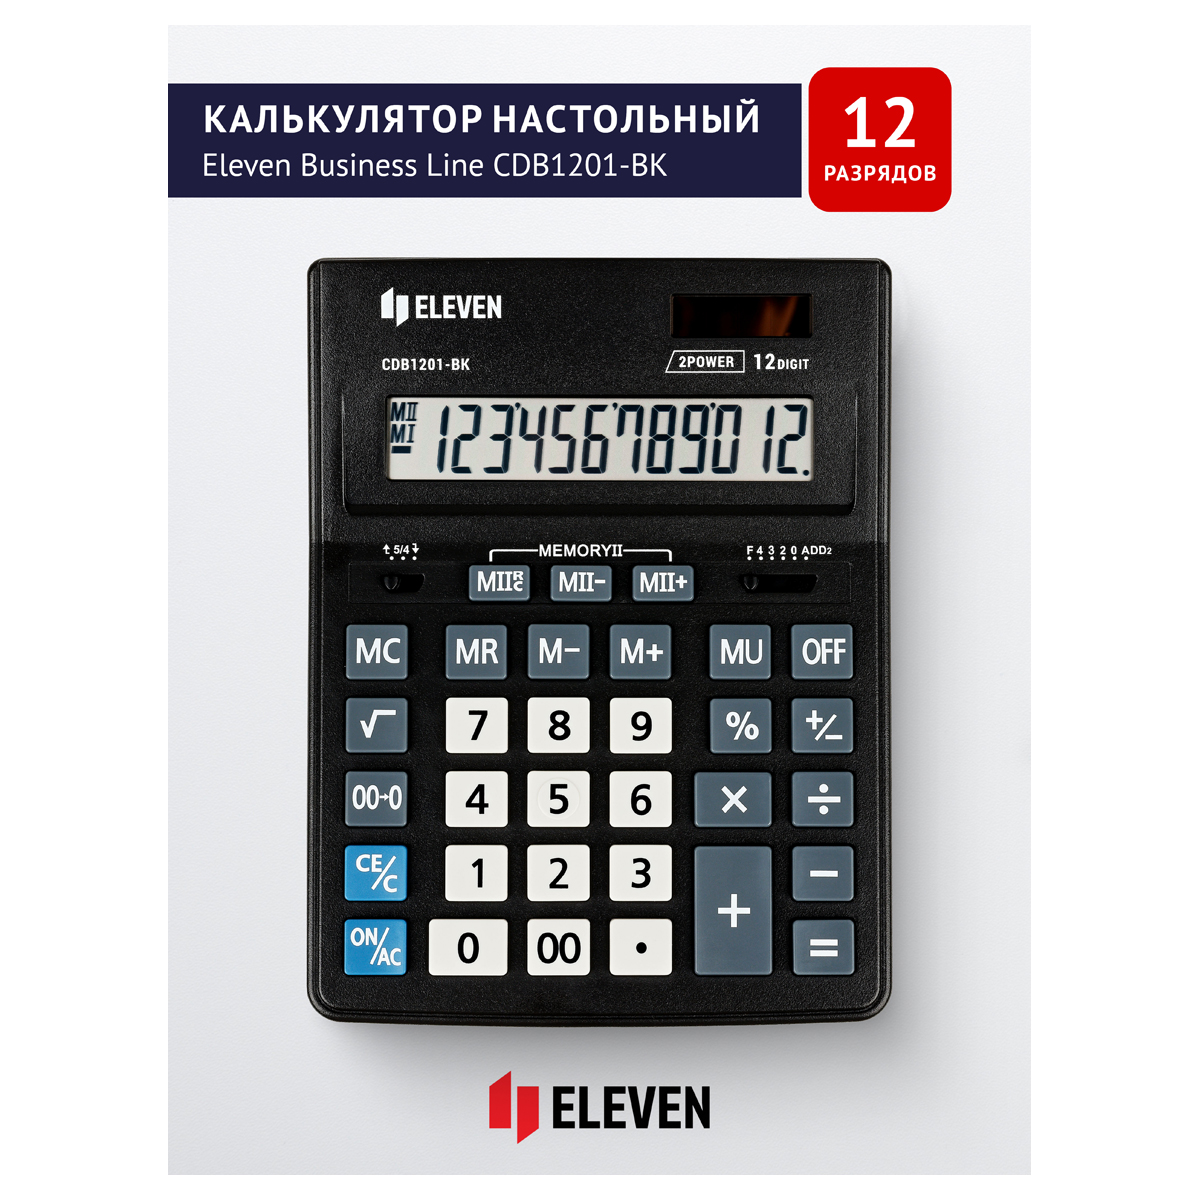 Я339192 Калькулятор настольный Eleven Business Line CDB1201-BK, 12 разрядов, двойное питание